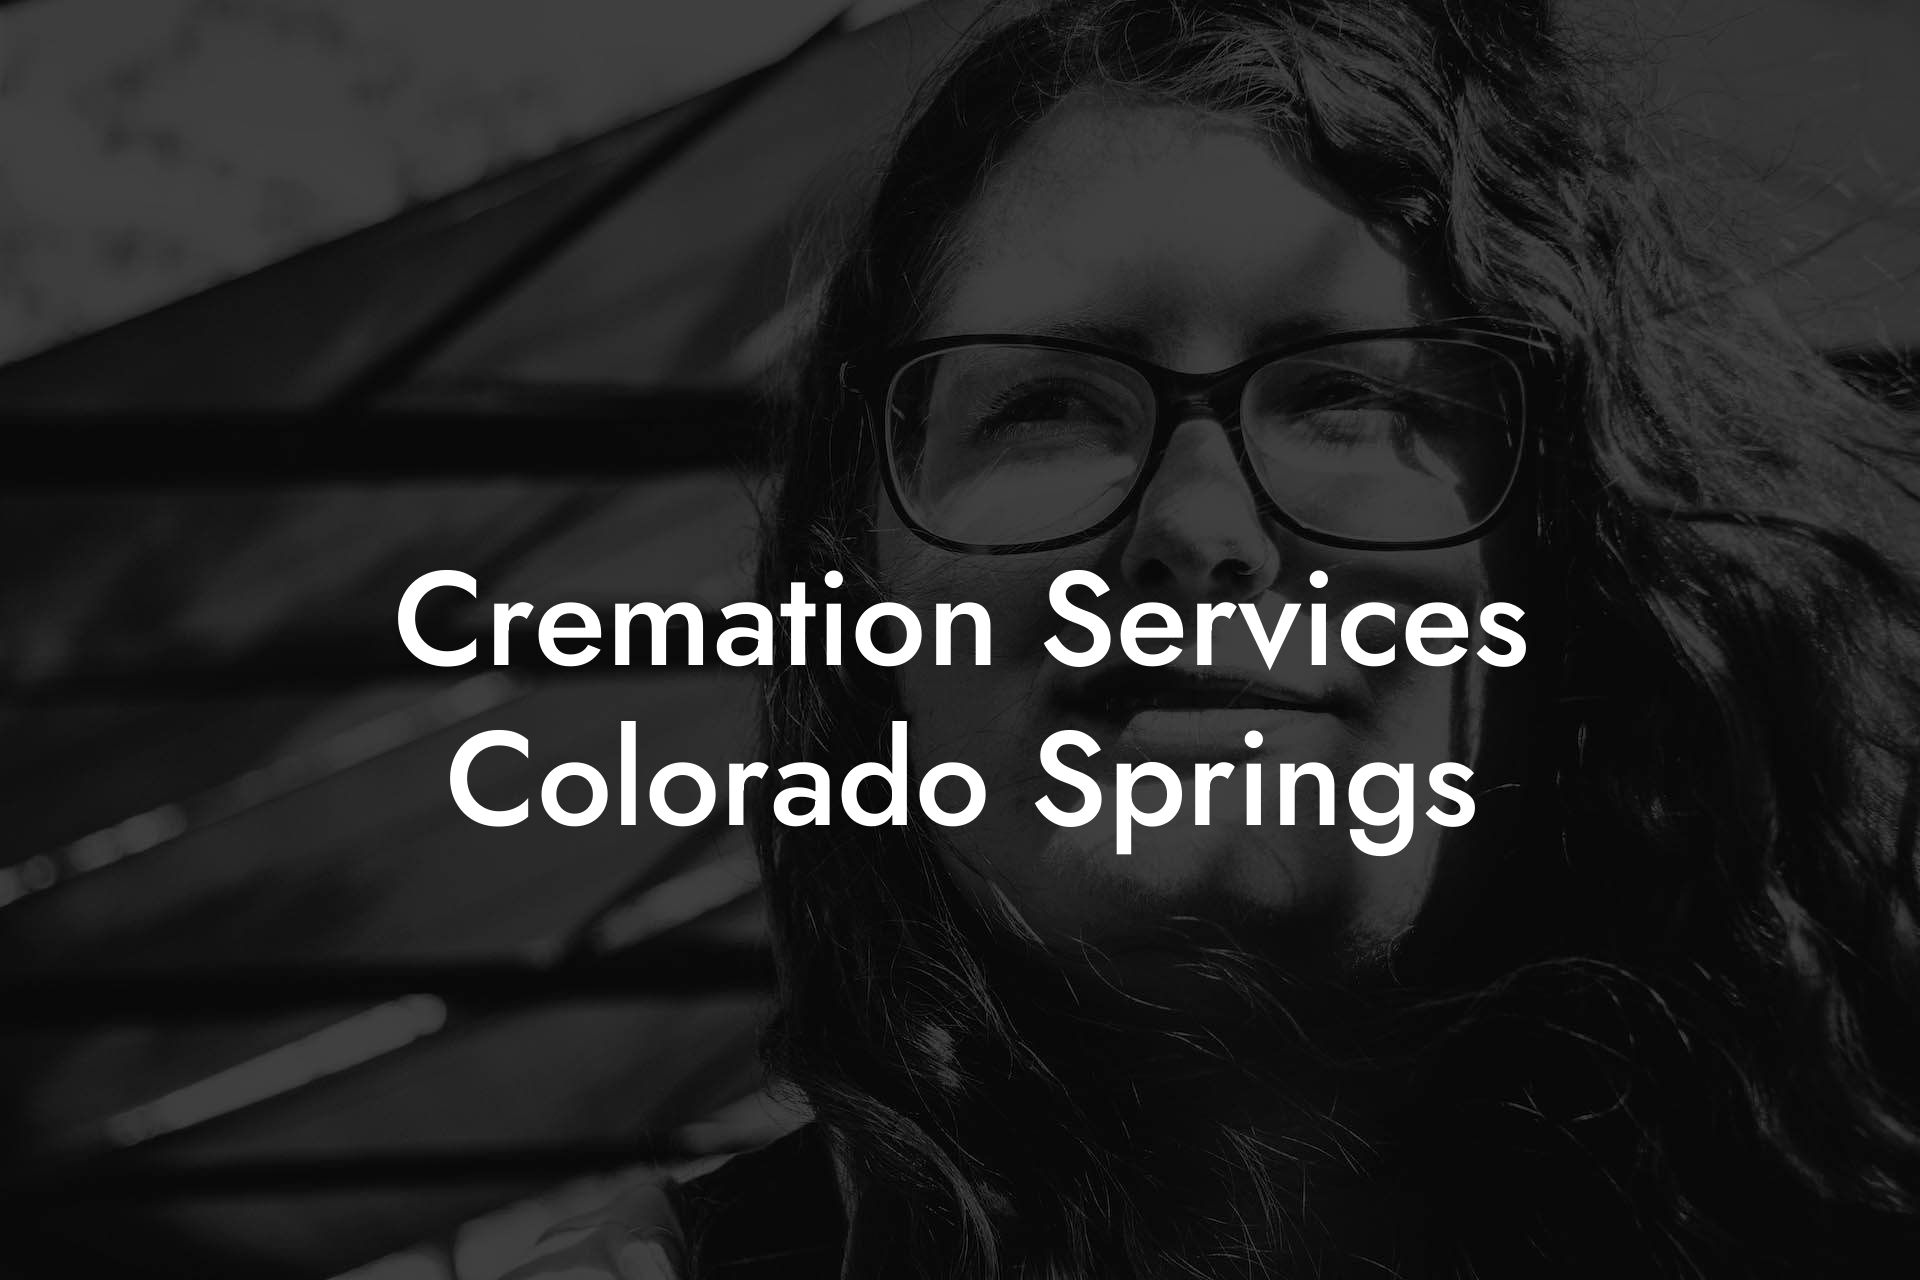 Cremation Services Colorado Springs